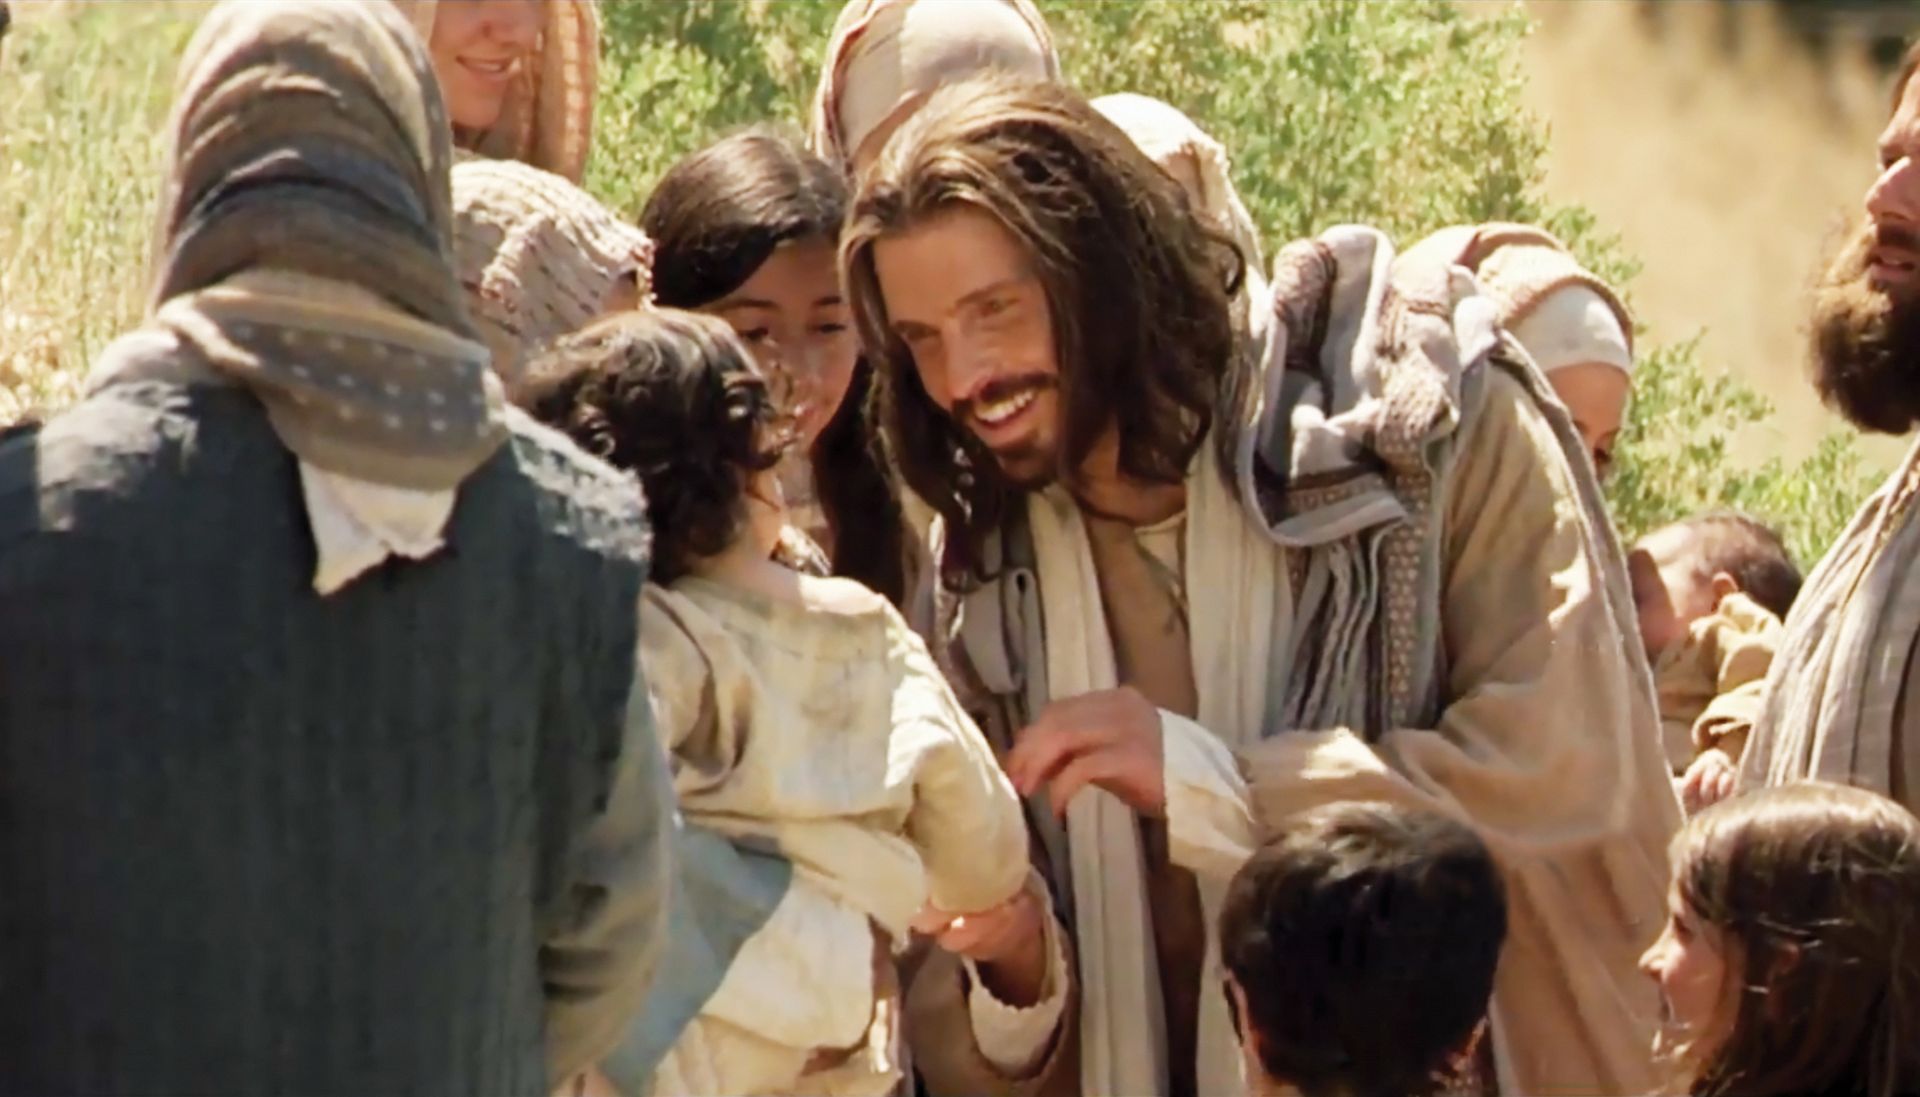 Christ with little children.